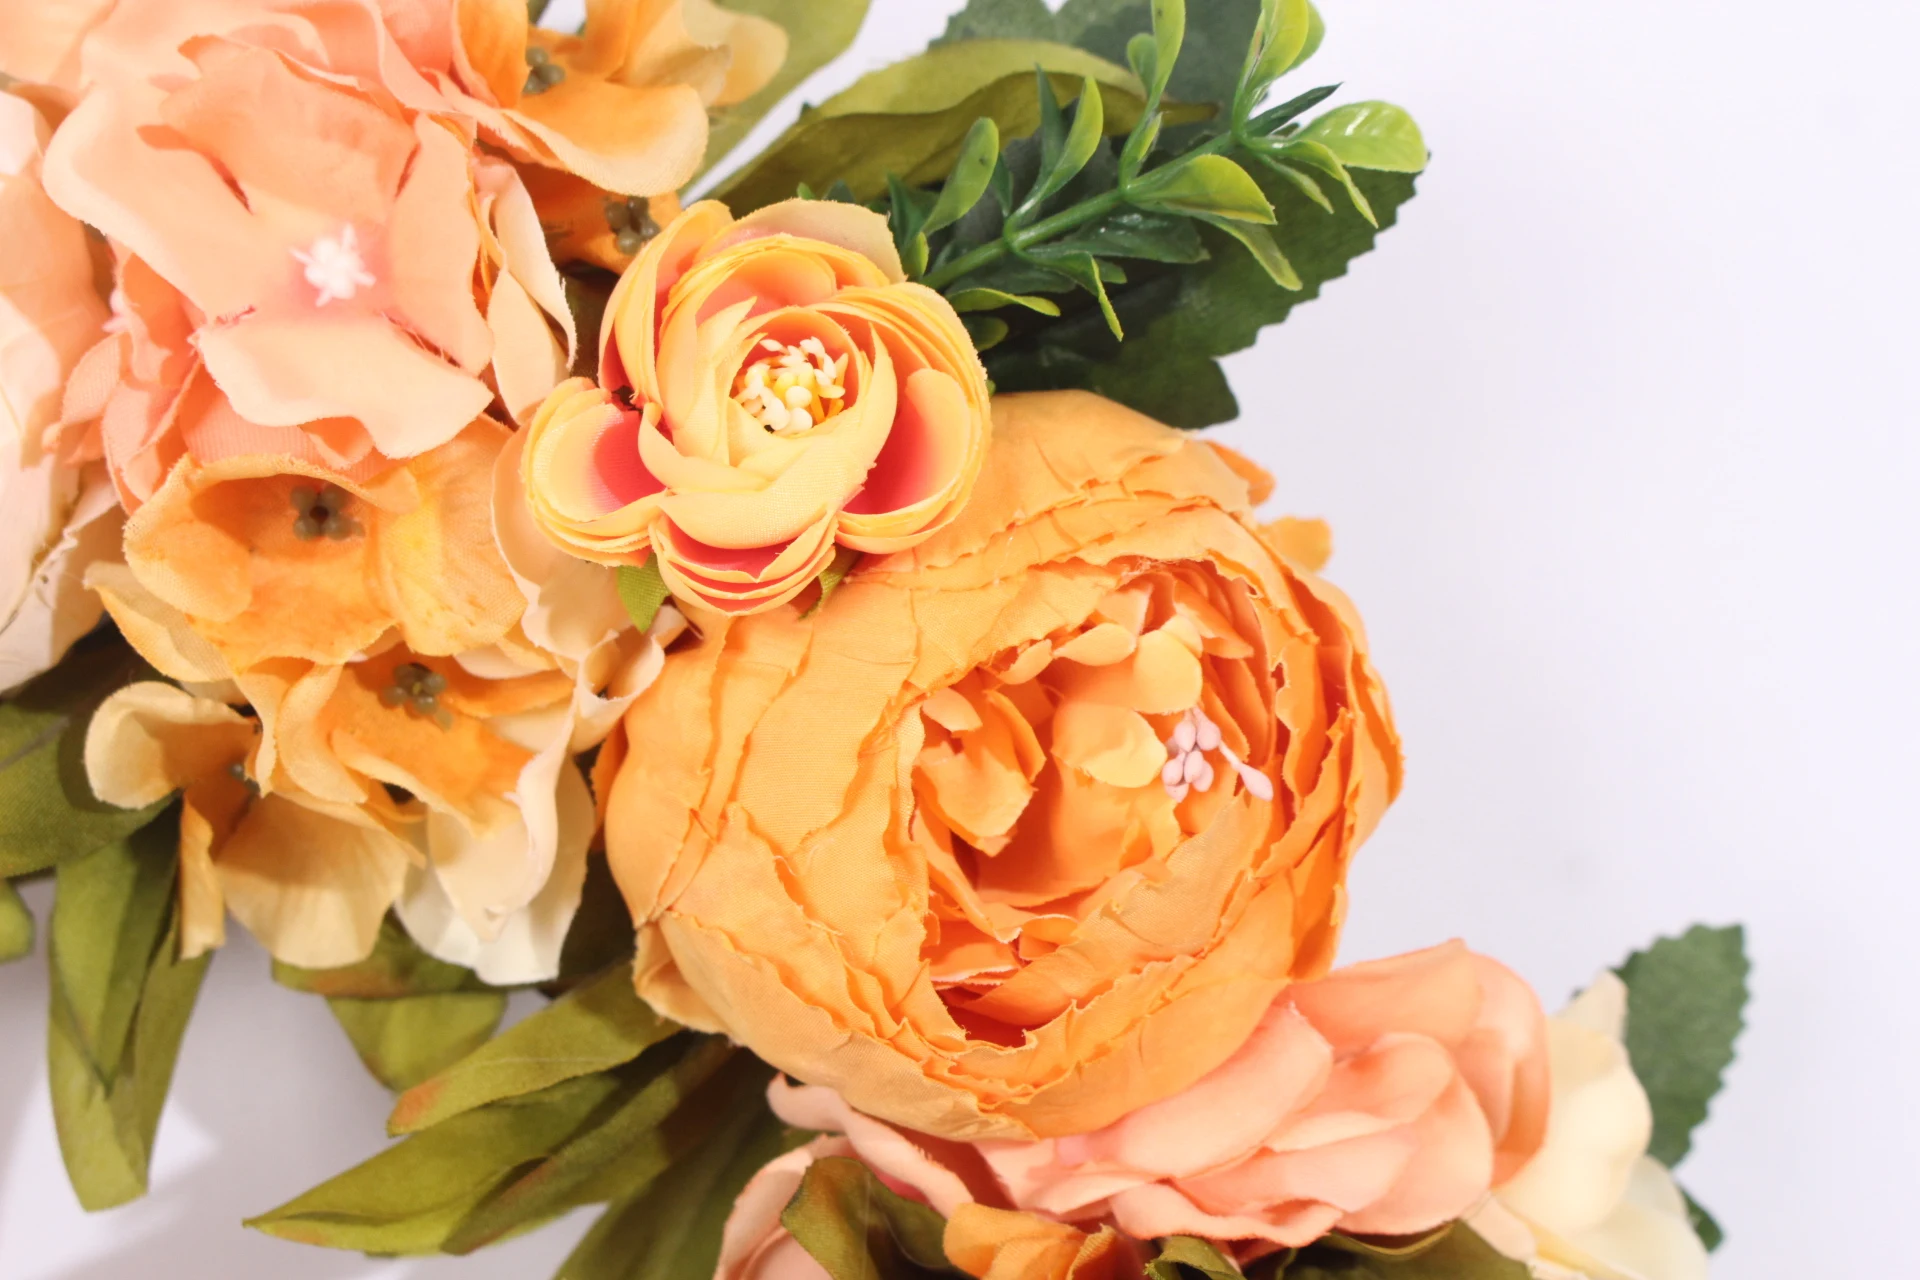 Имитация венка розы гортензии гирлянда порог венок из искусственных цветов DIY свадебный домашний декор двери порог цветы подарок